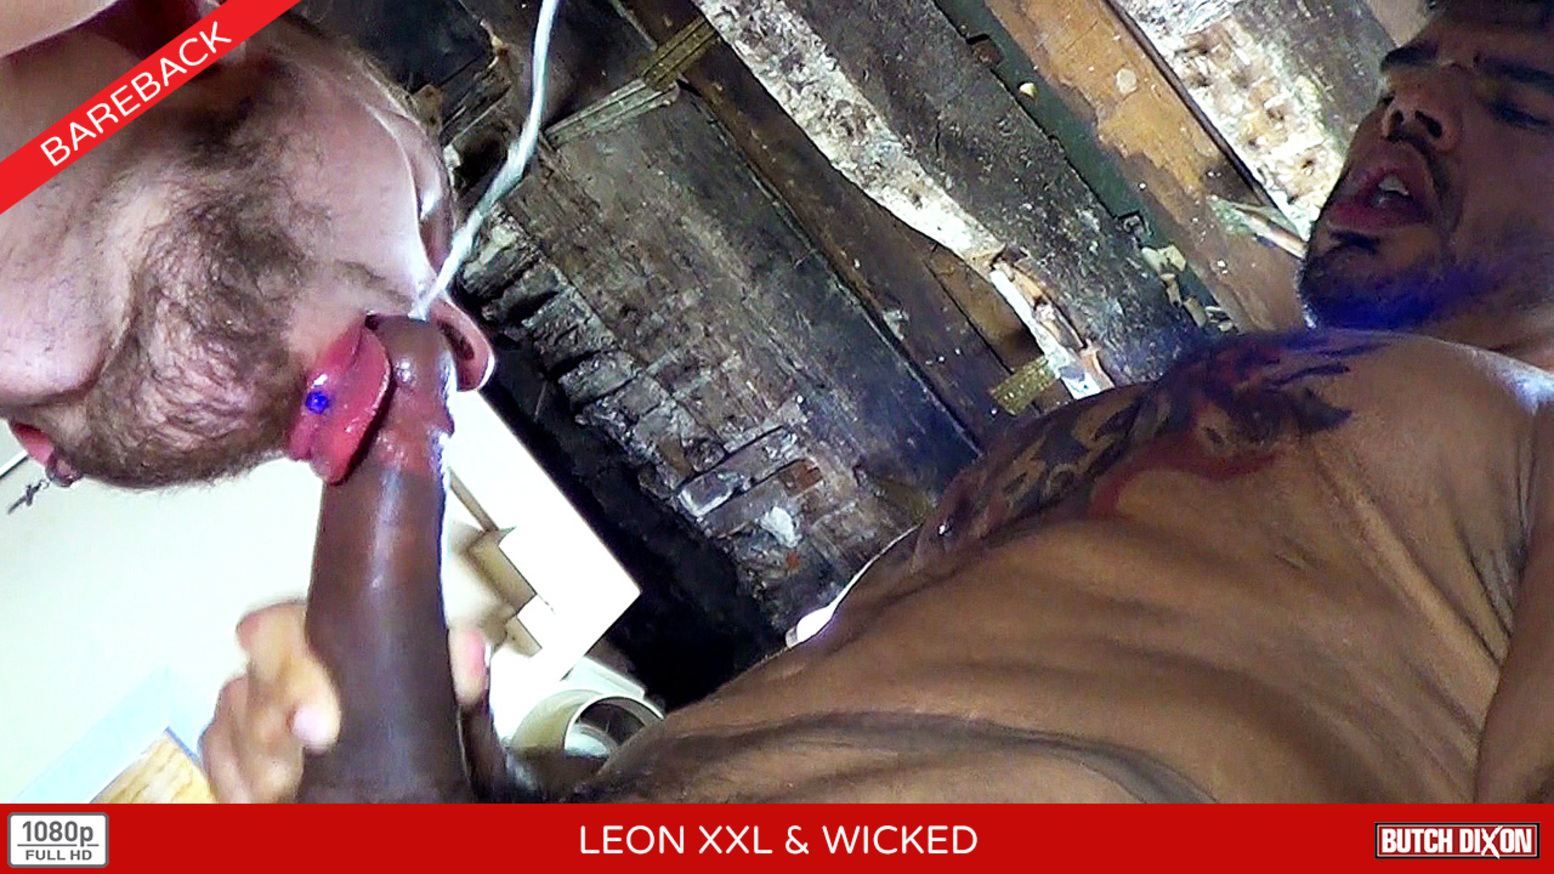 Leon XXL & Wicked